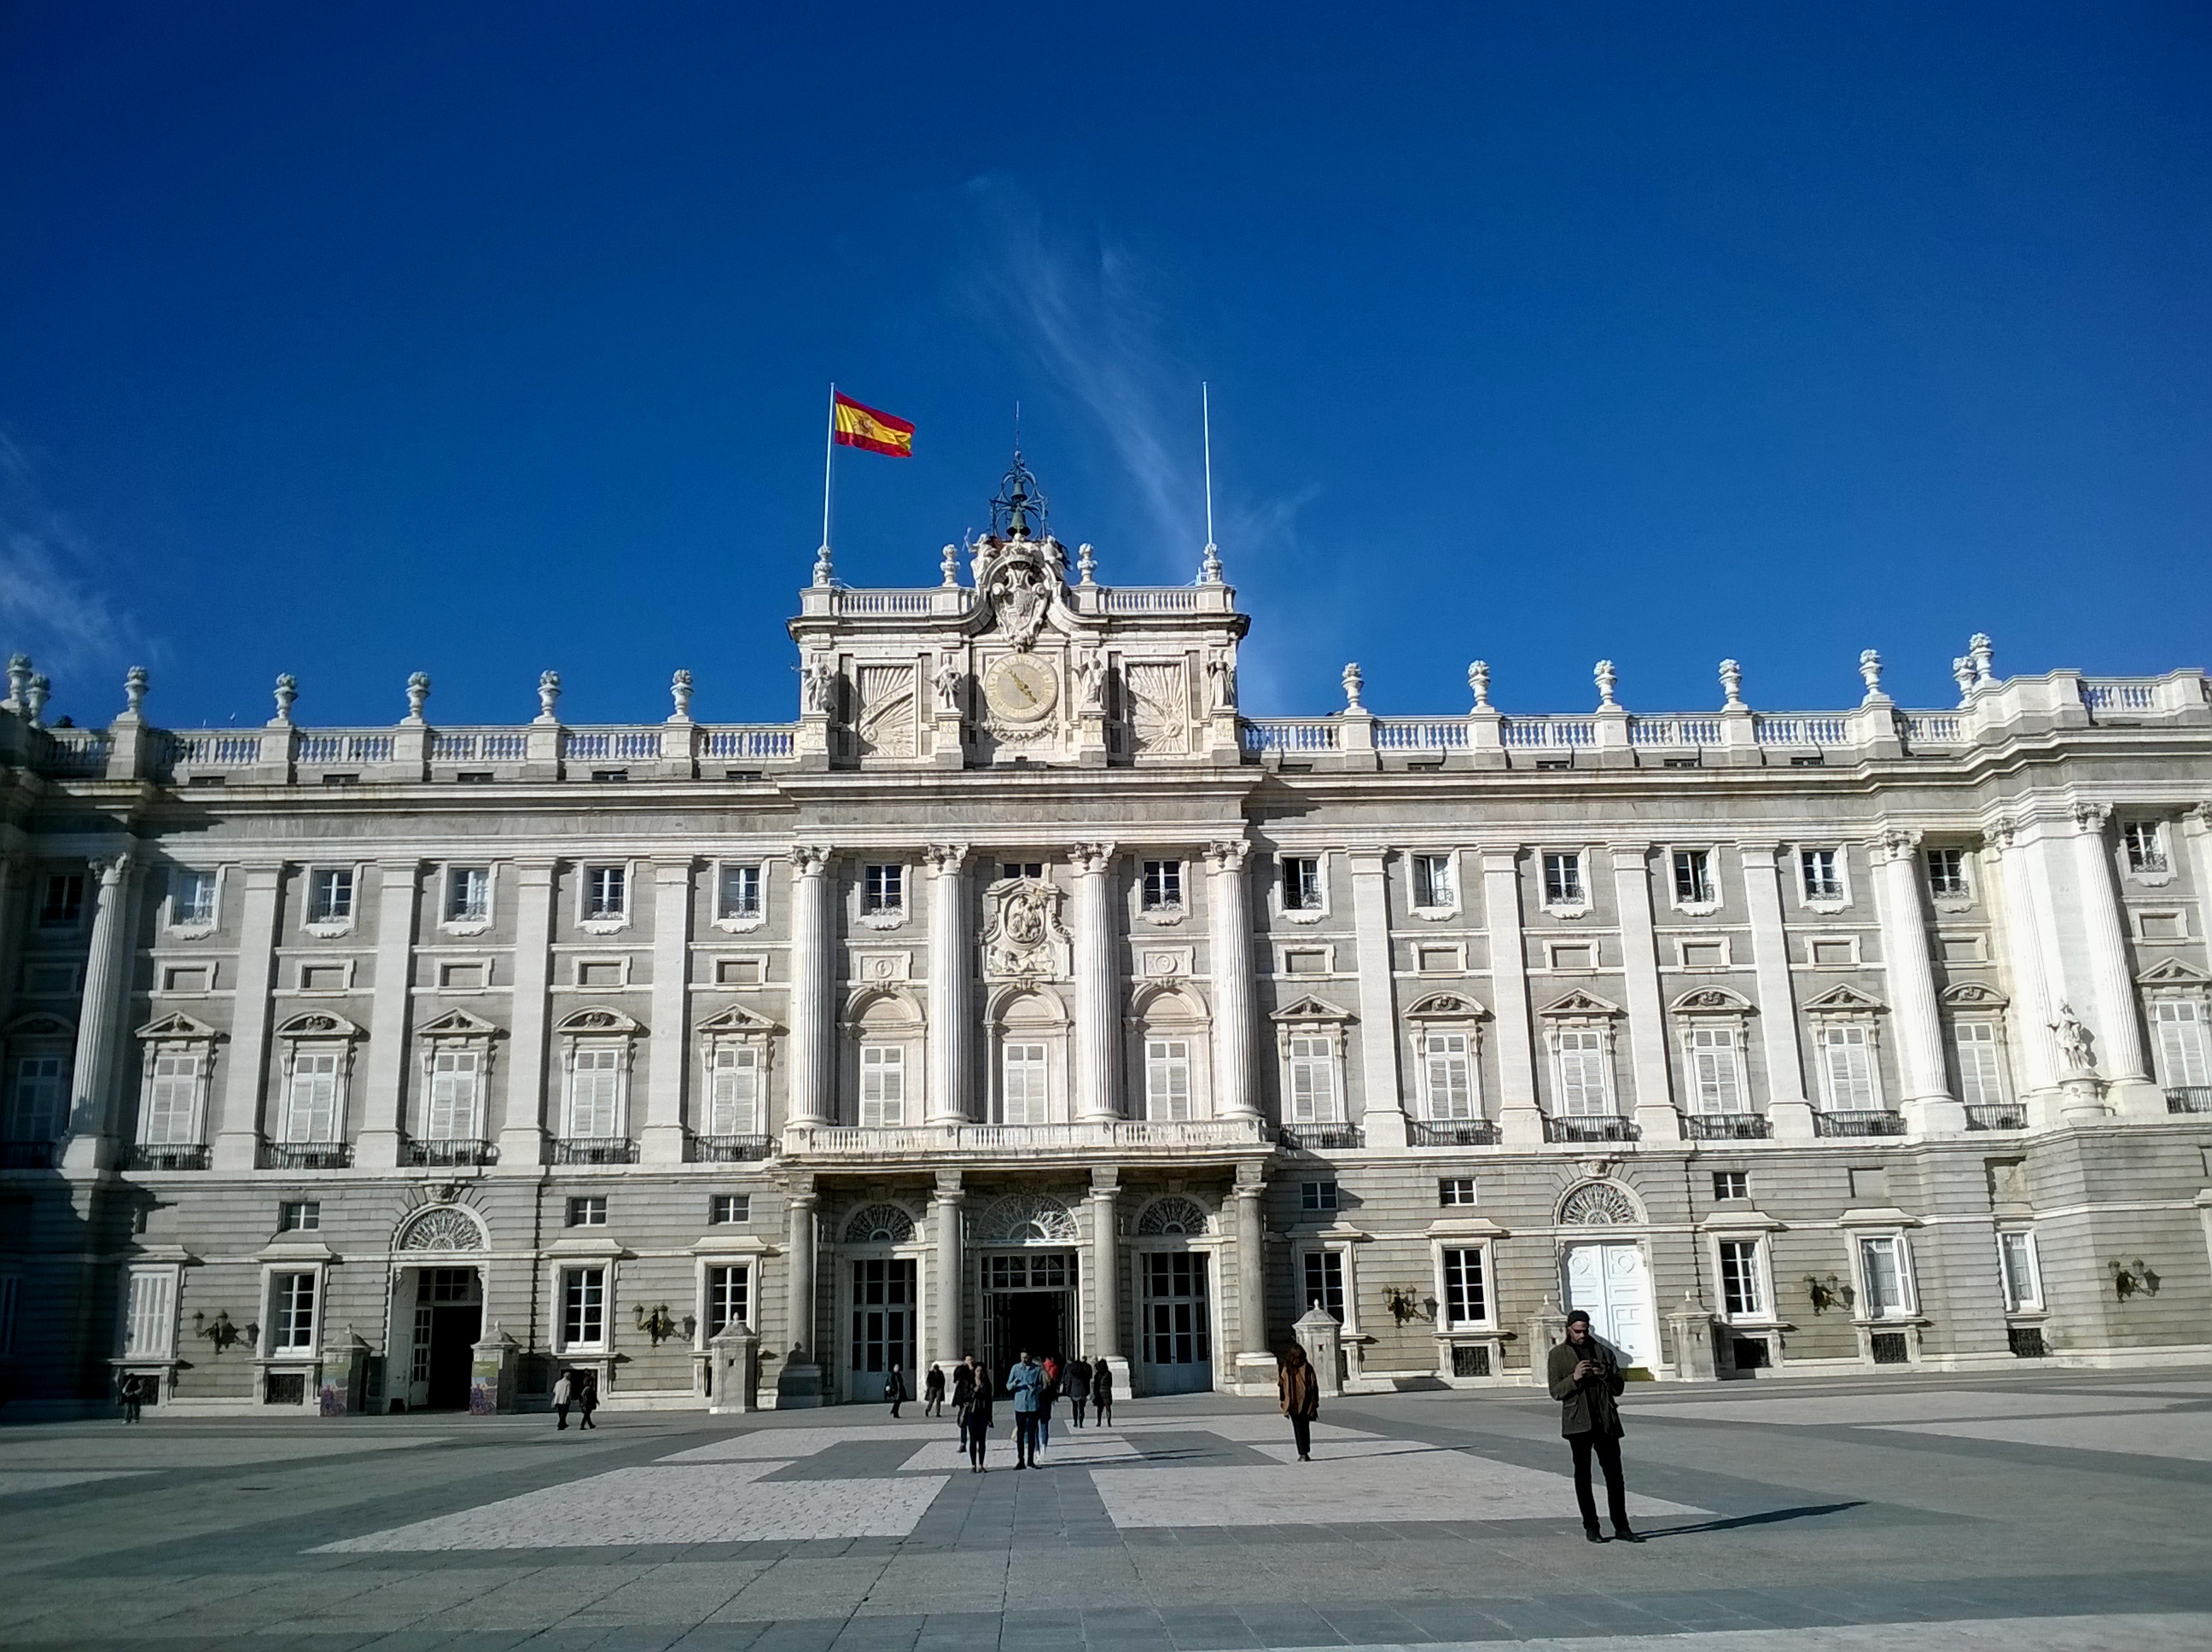 Royal Palace of Madrid - Wikipedia